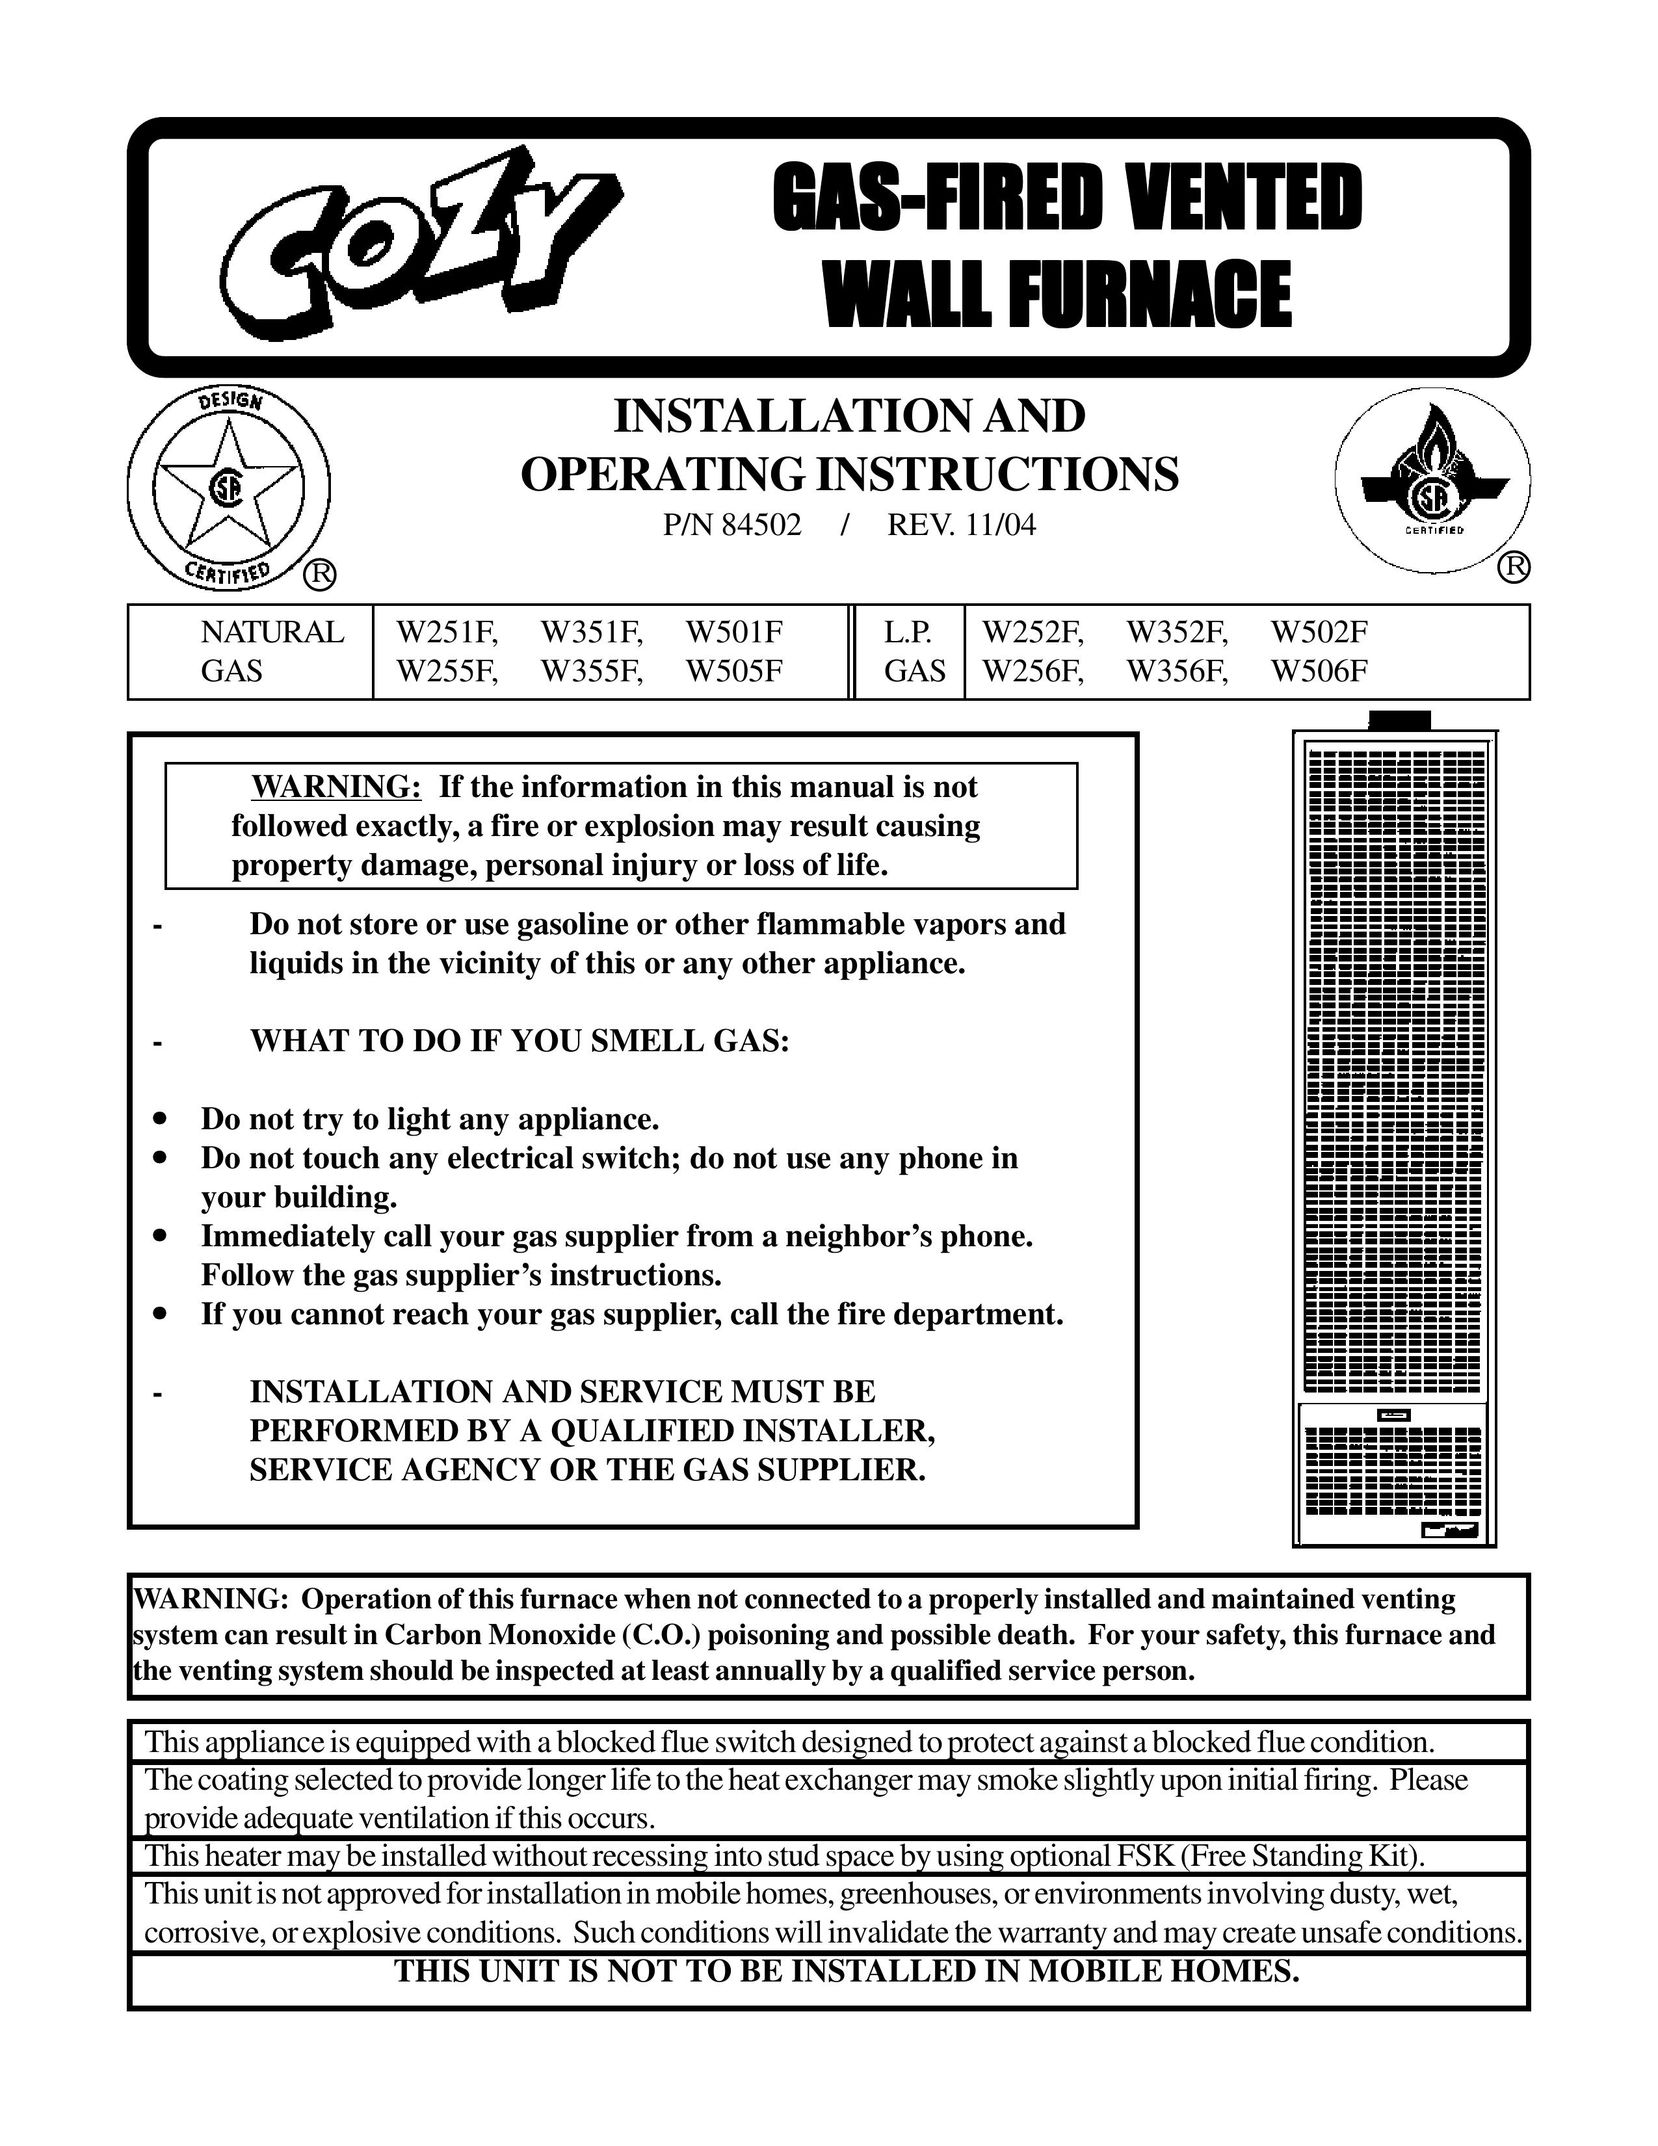 Louisville Tin and Stove W501F W252F Furnace User Manual